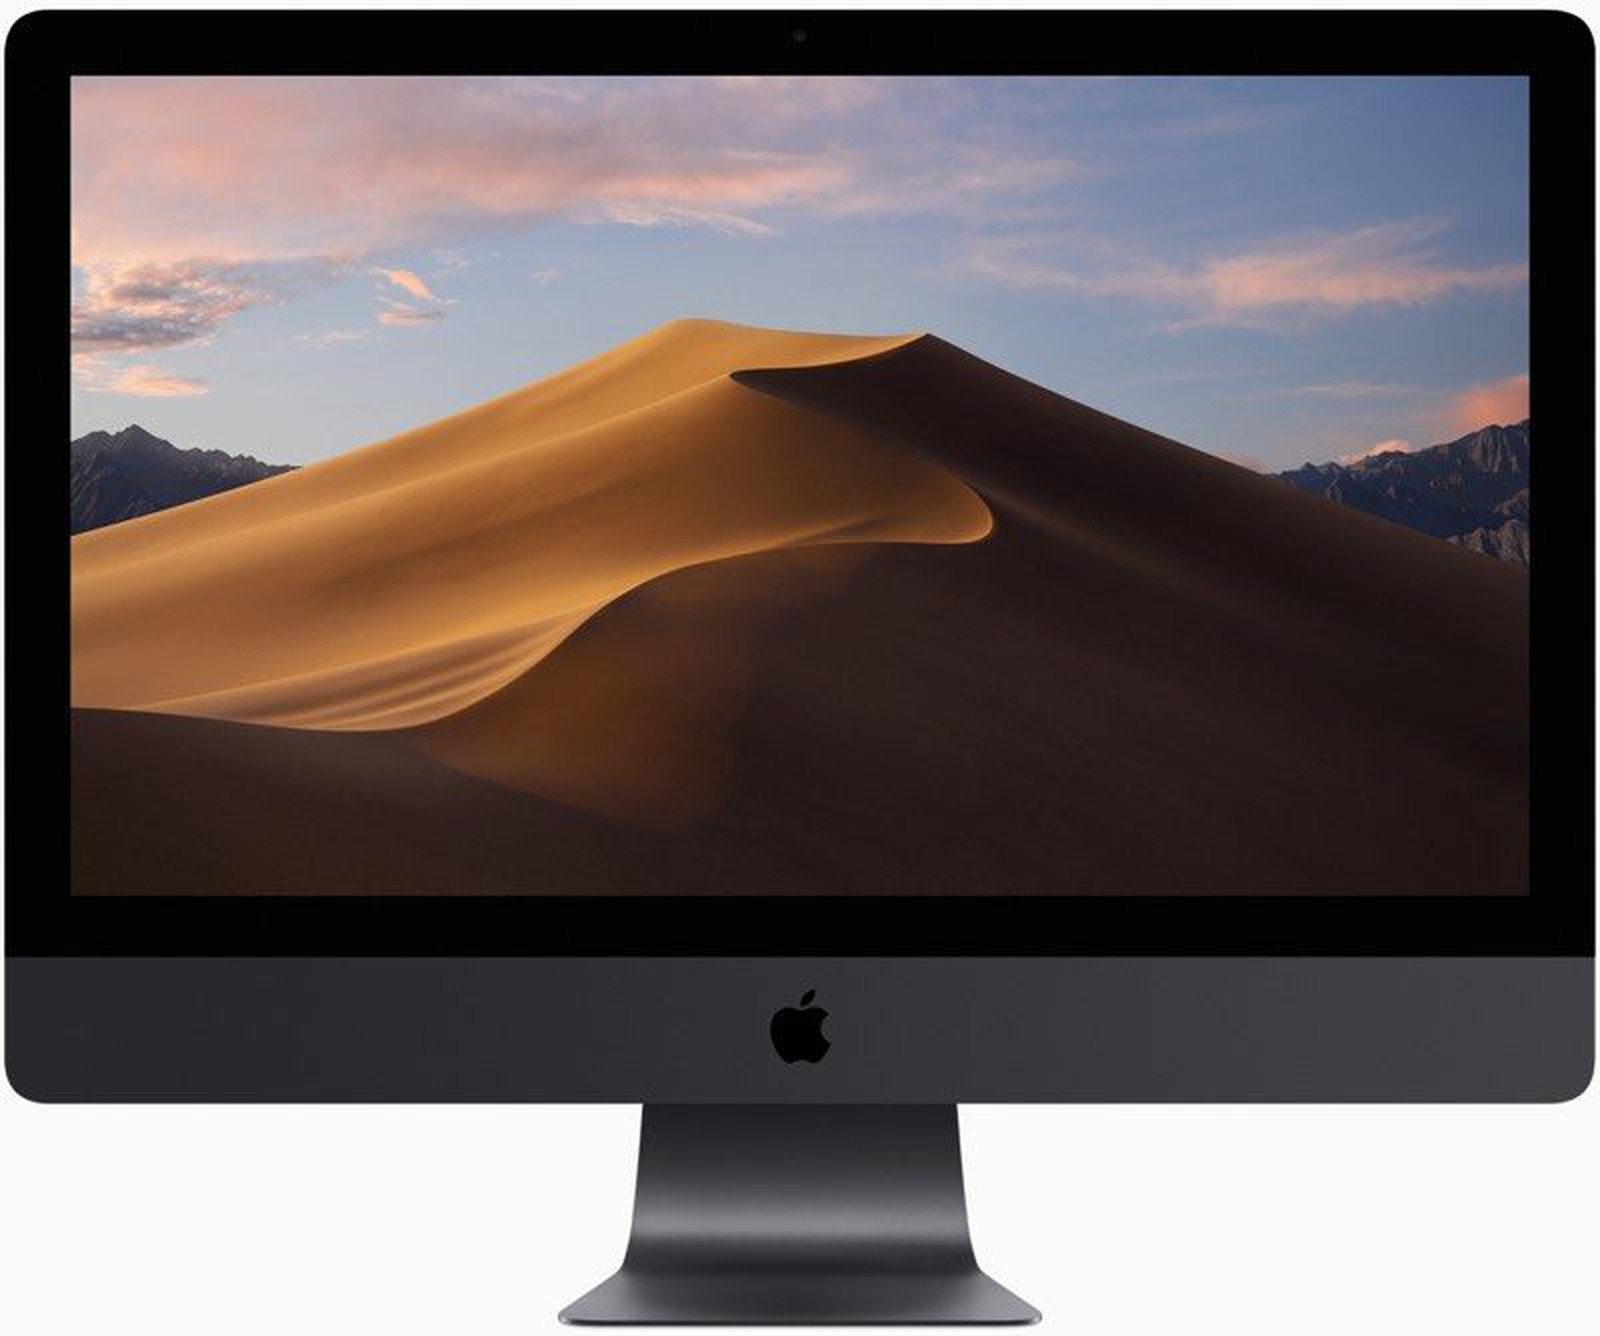 mac mini mid 2010 will not update sierra